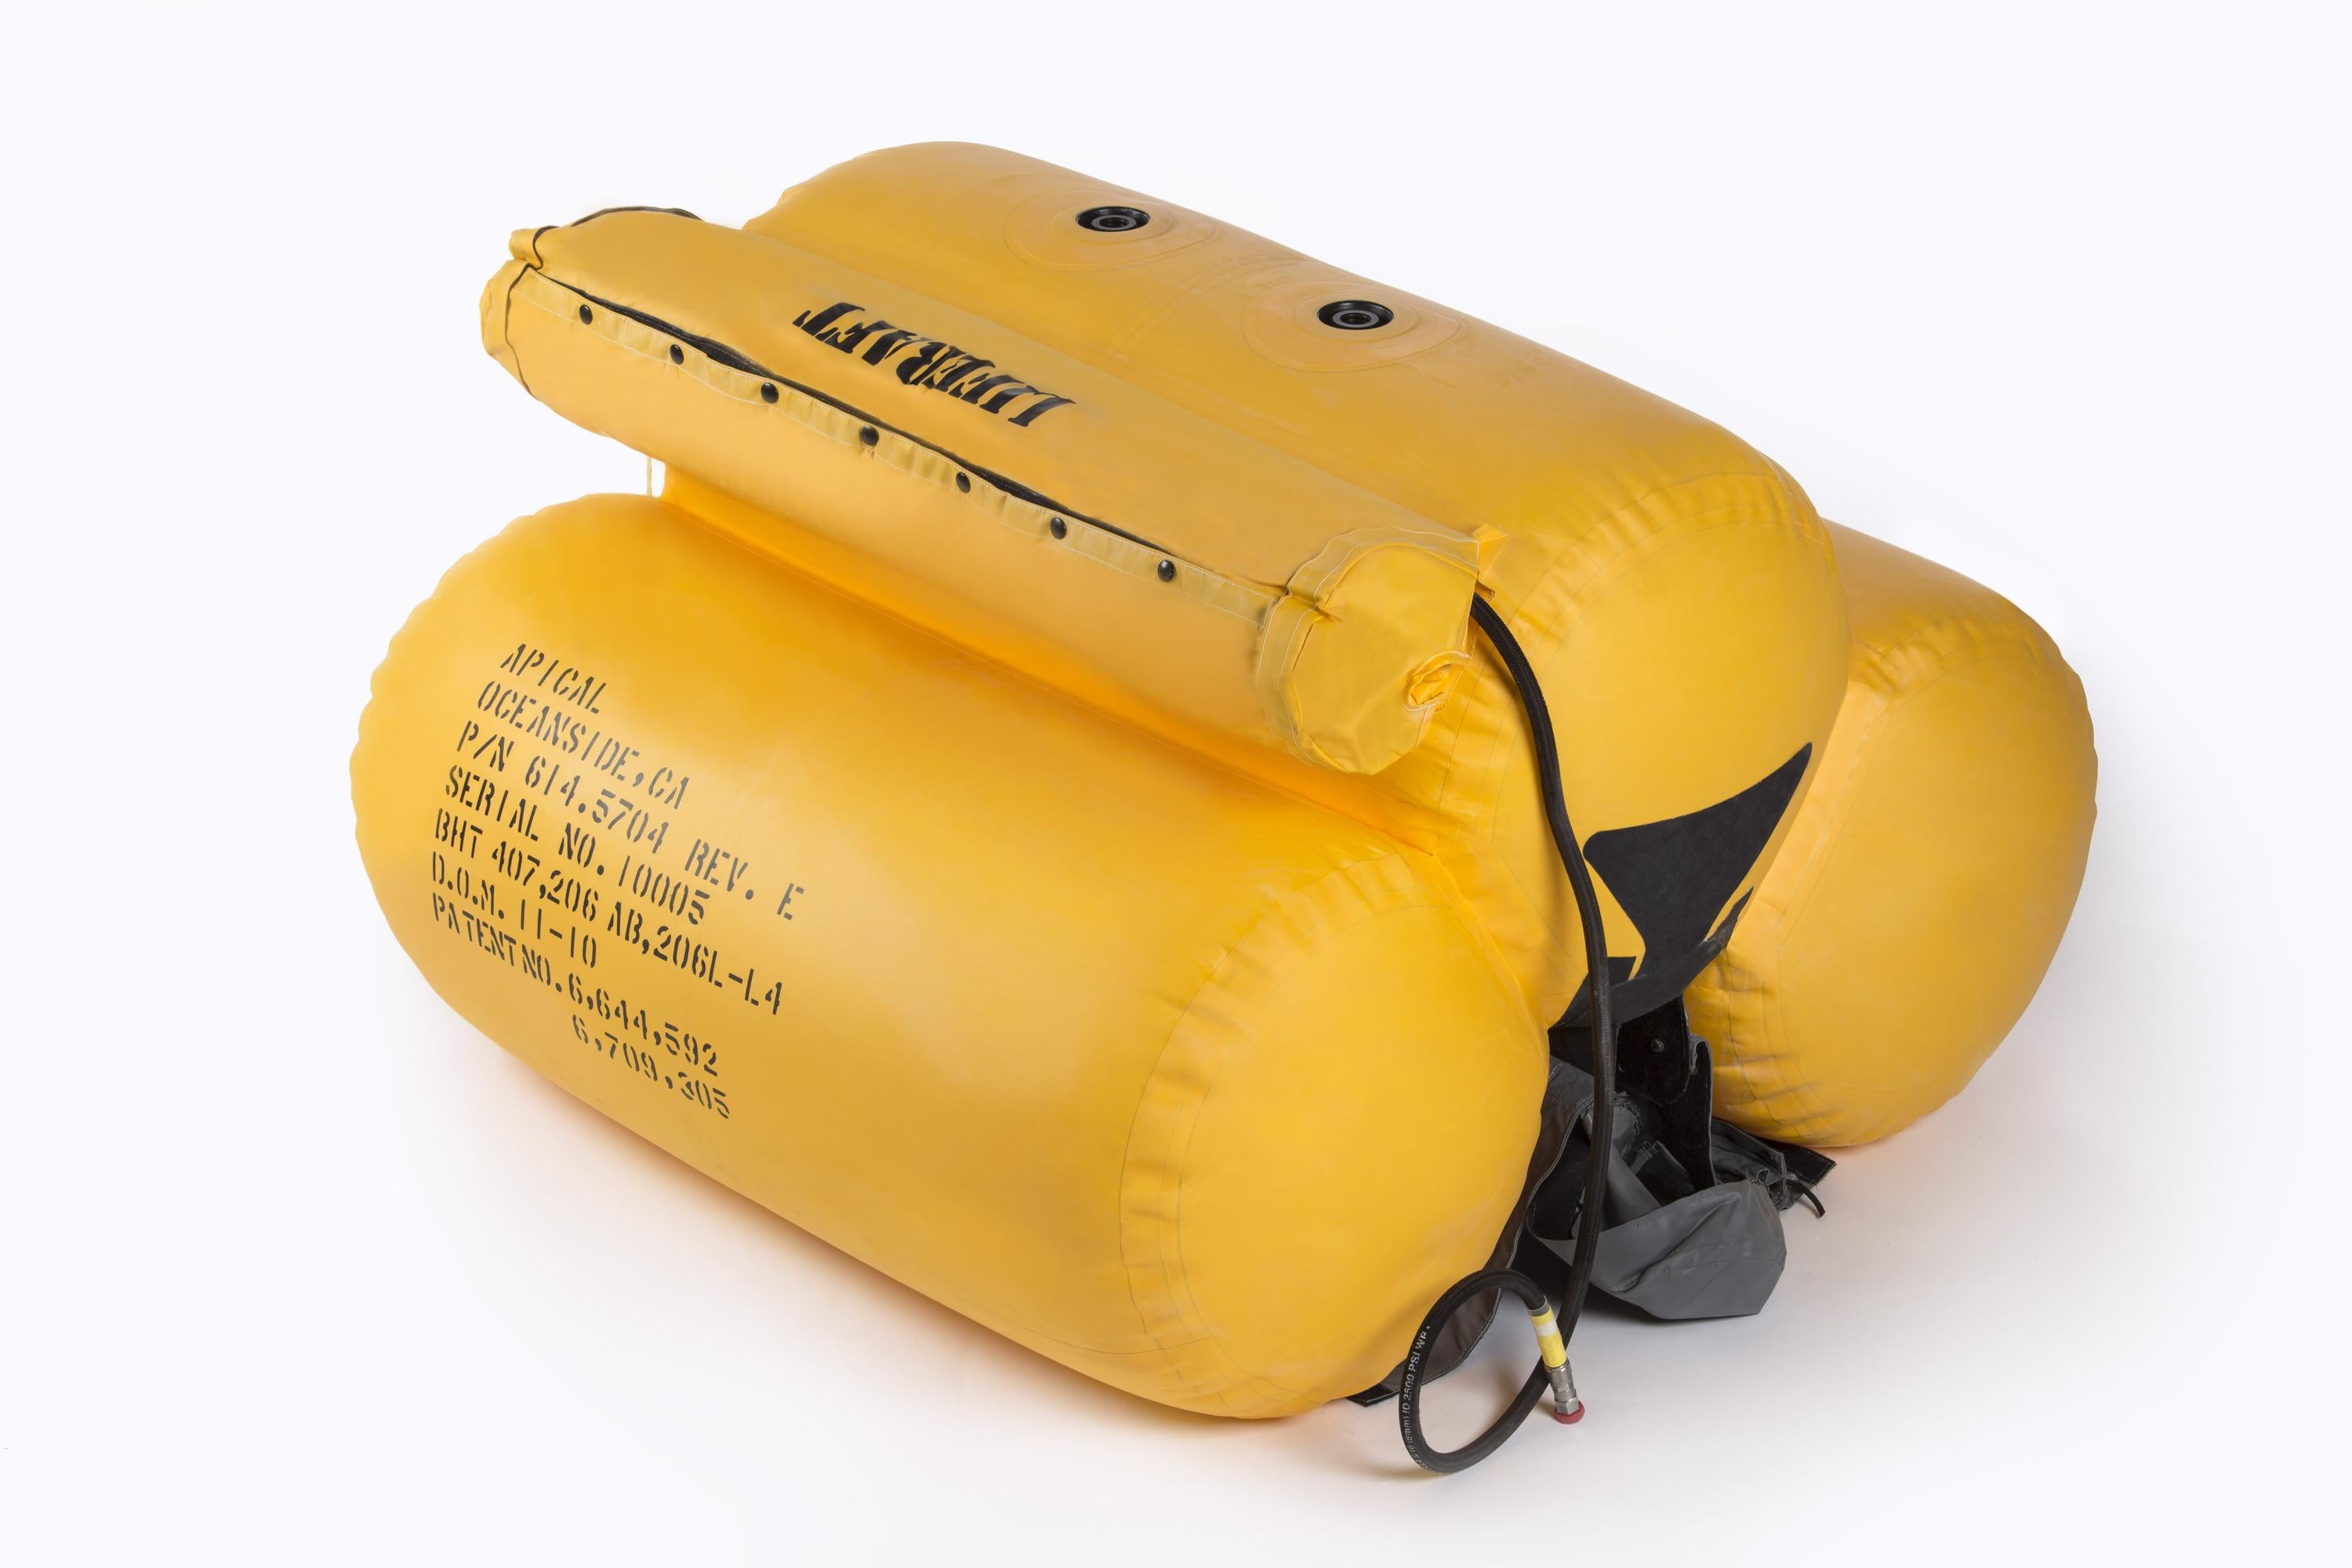 412/212/210 tri bag float system with liferafts, internal hoist compatible 